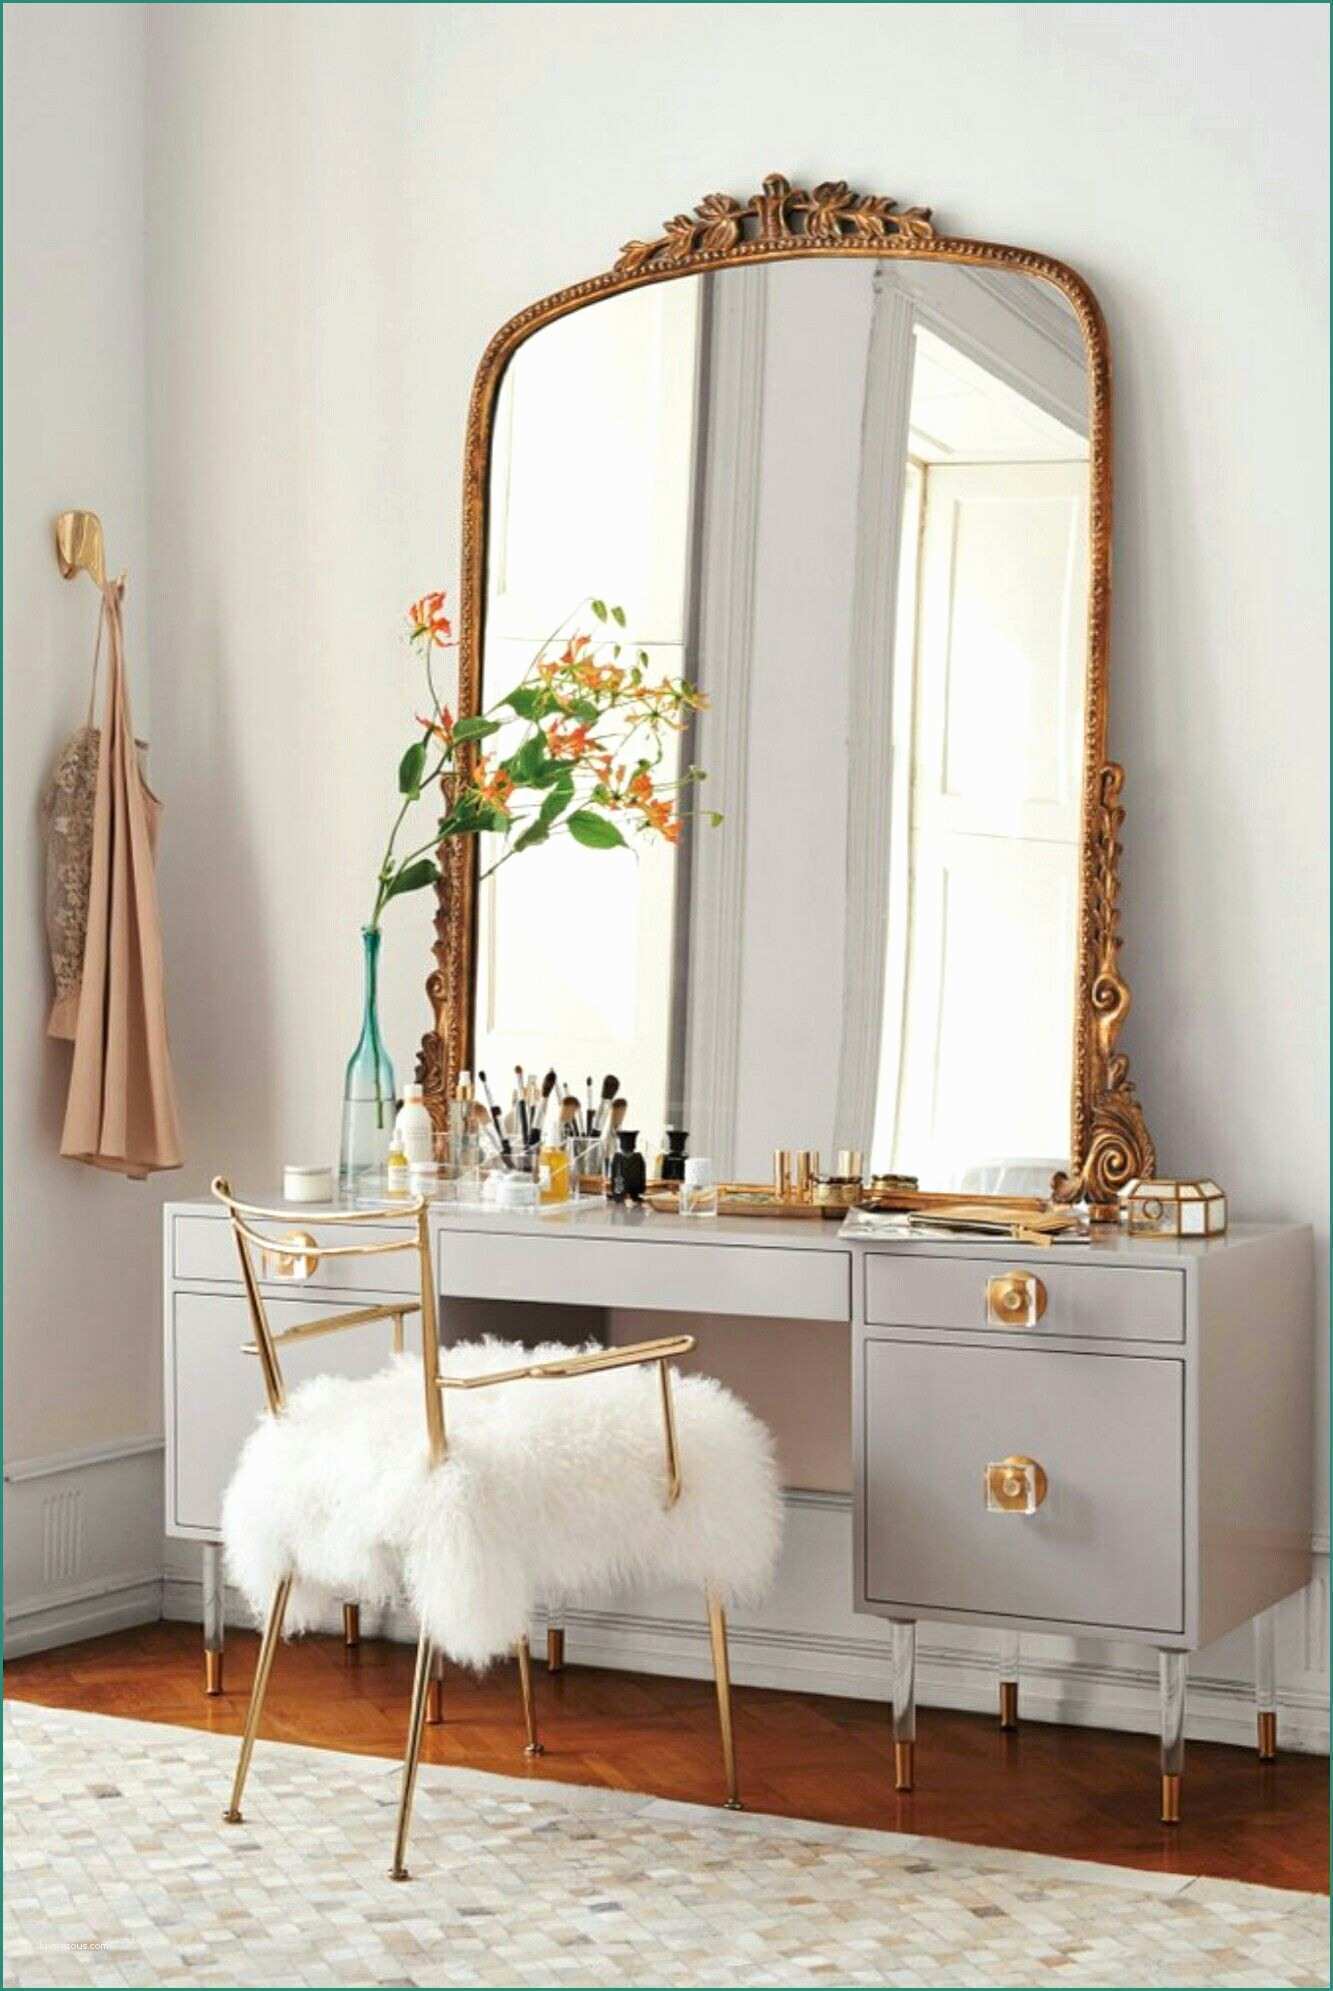 Mobili Per Arredare Casa E Vanity French Large Mirror Furry Chair